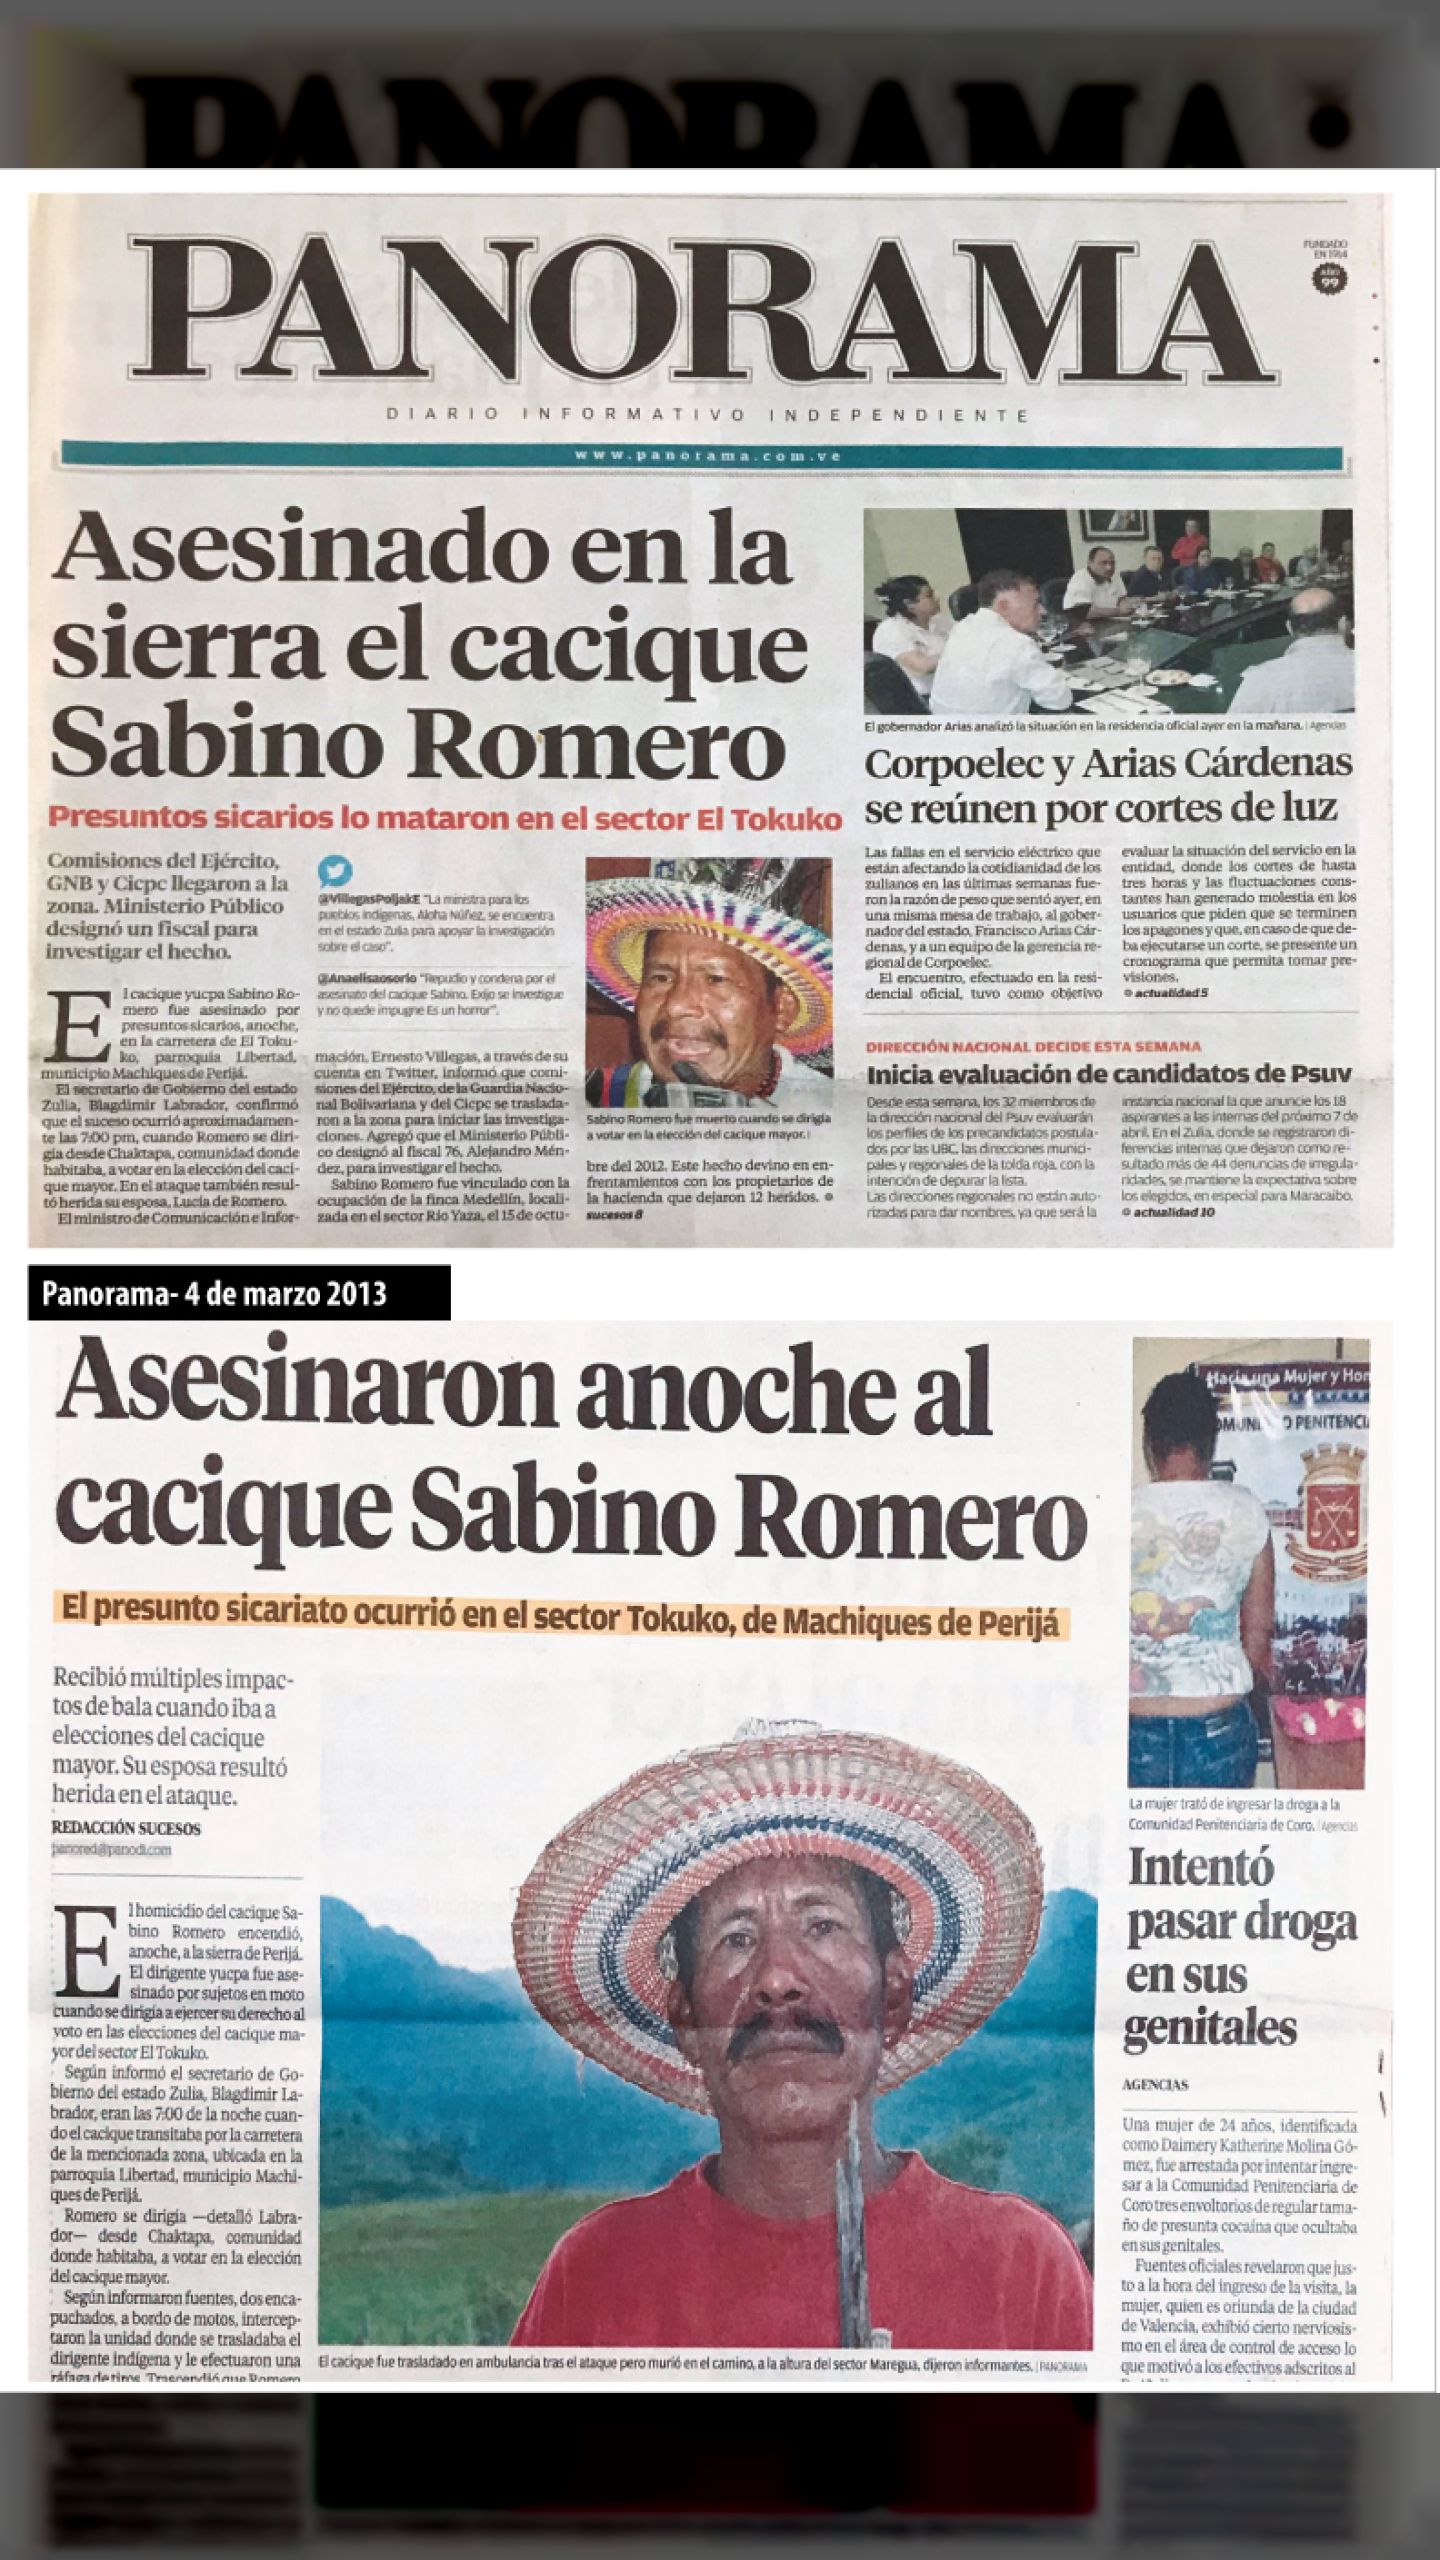 Es asesinado el cacique y dirigente indígena Sabino Romero Izarra (PANORAMA, 4 DE MARZO 2013)